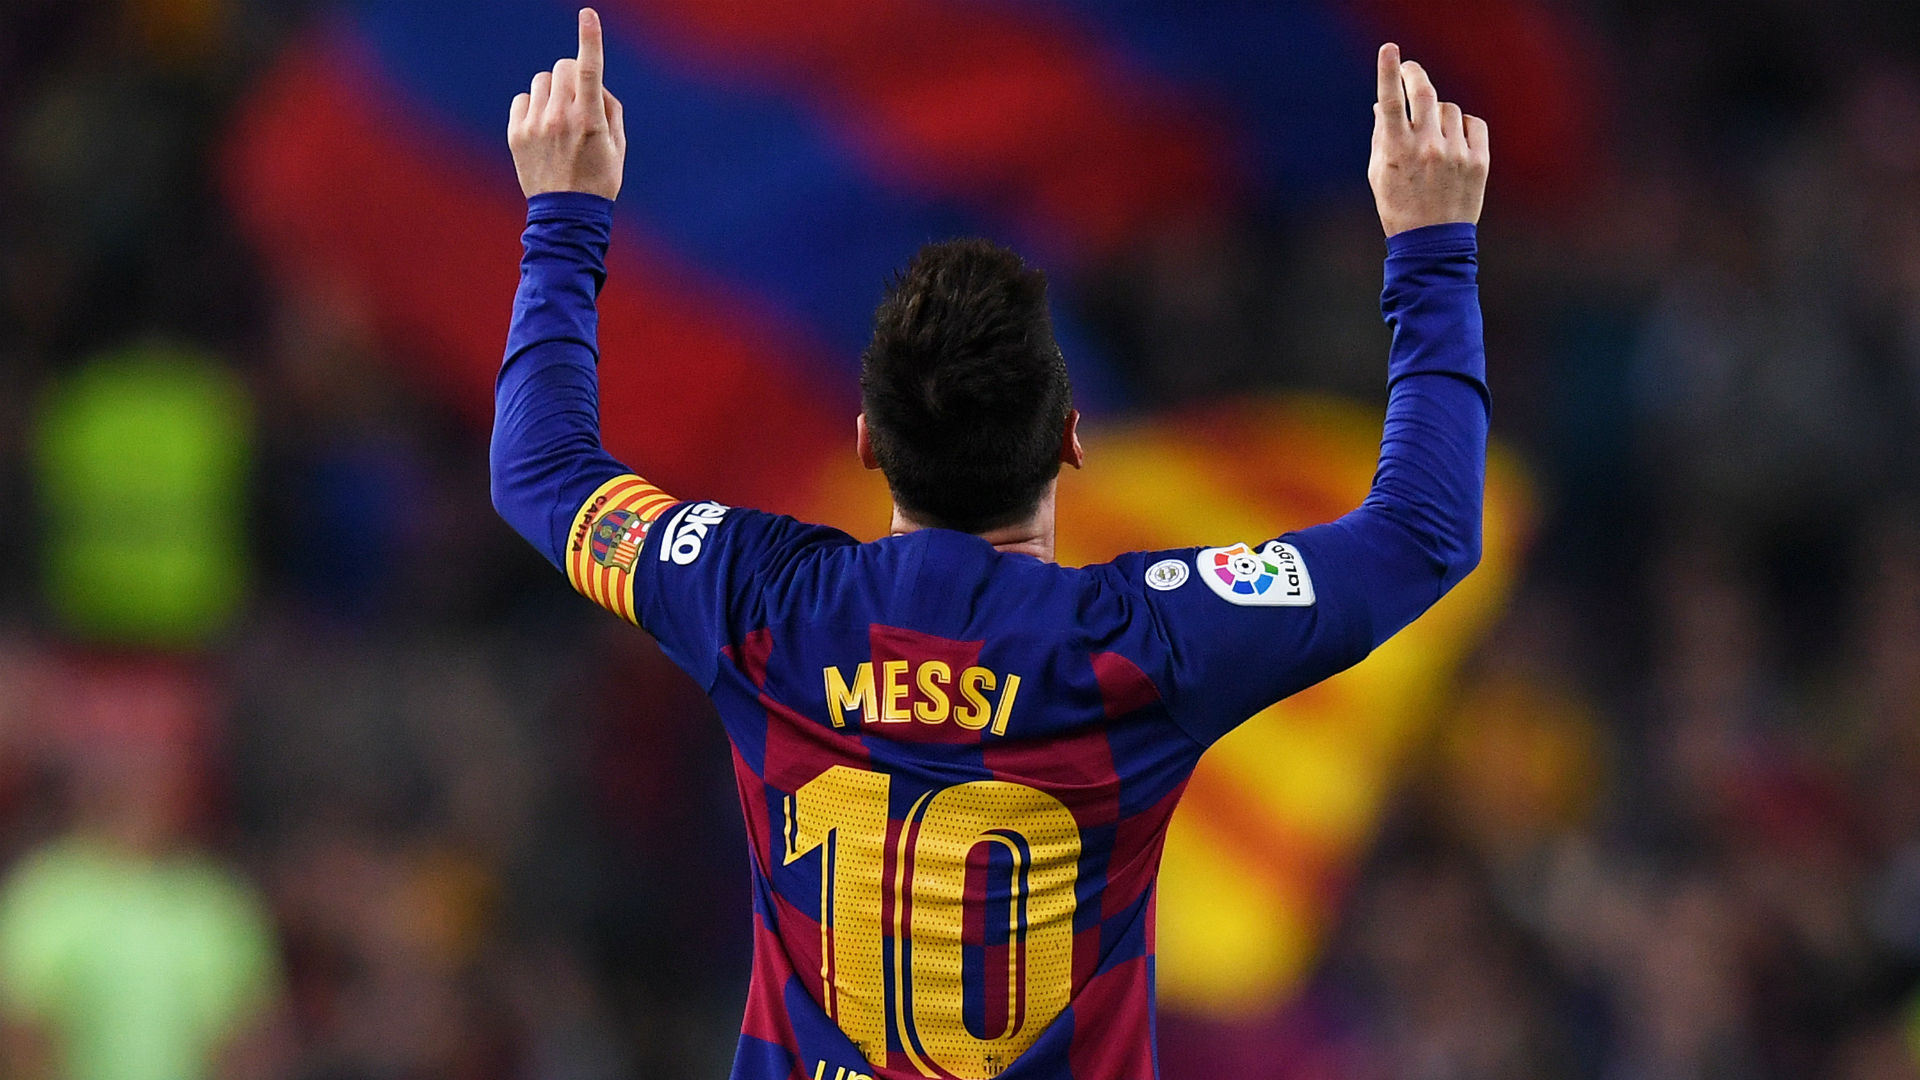 Messi jouera son 700e match face à Dortmund, retour sur ses statistiques de folies